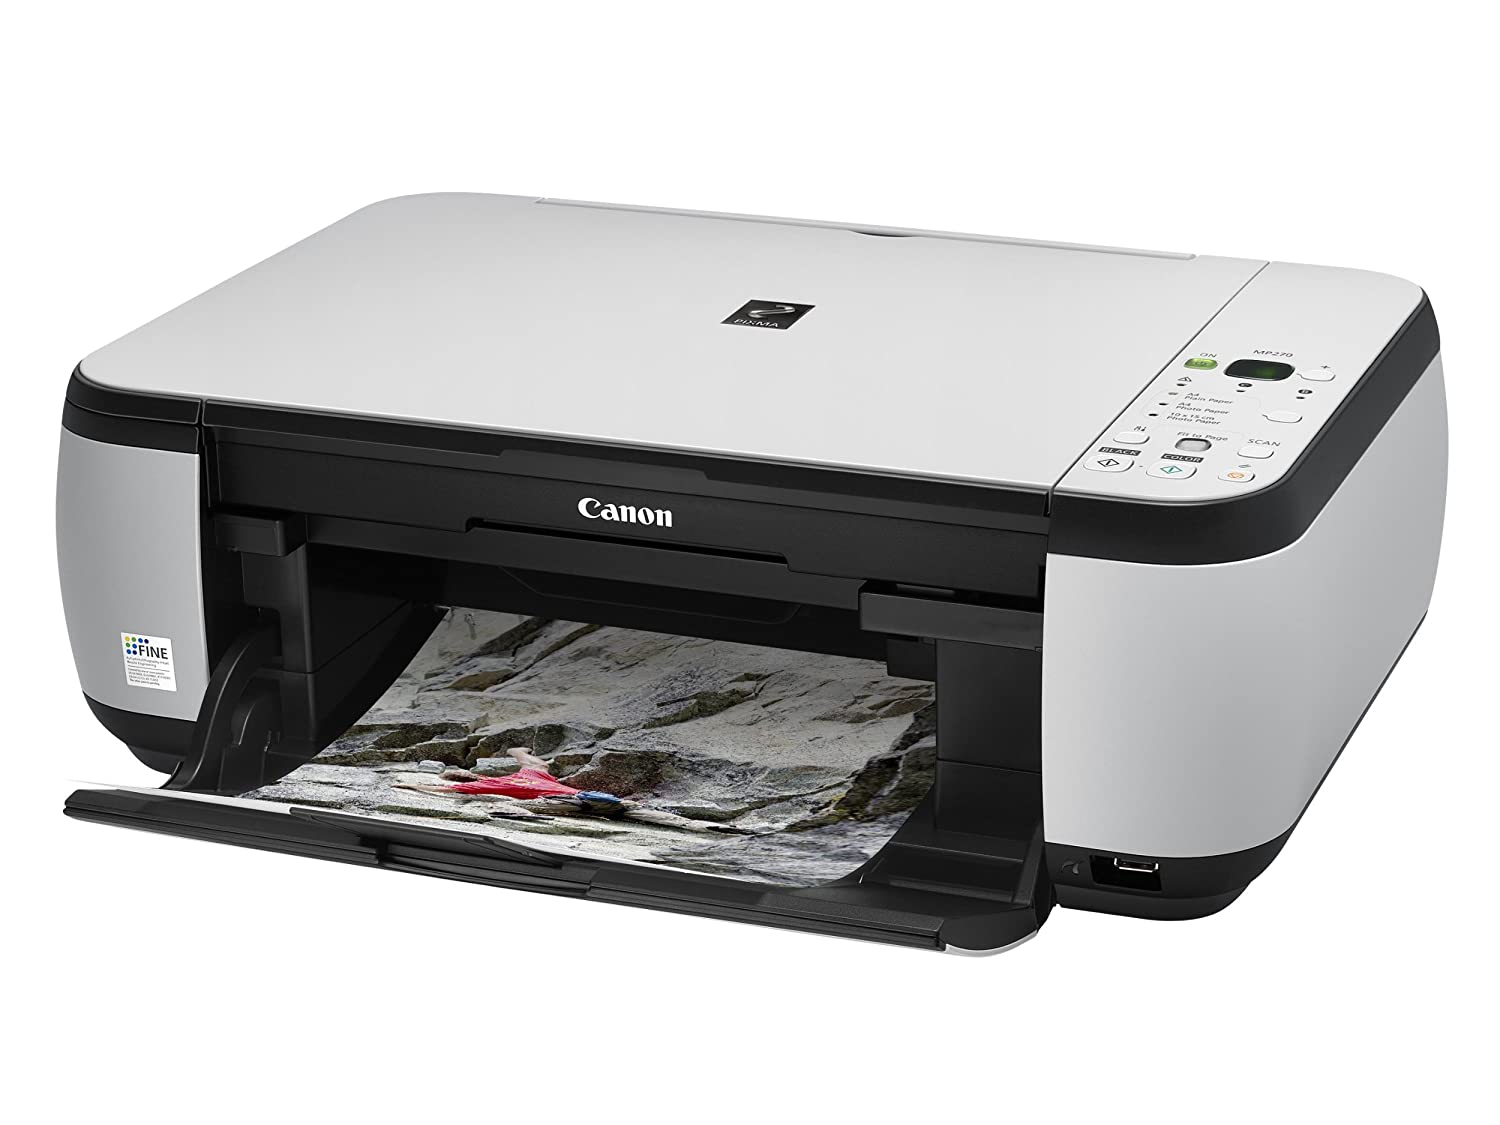 canon mp270 printer software download